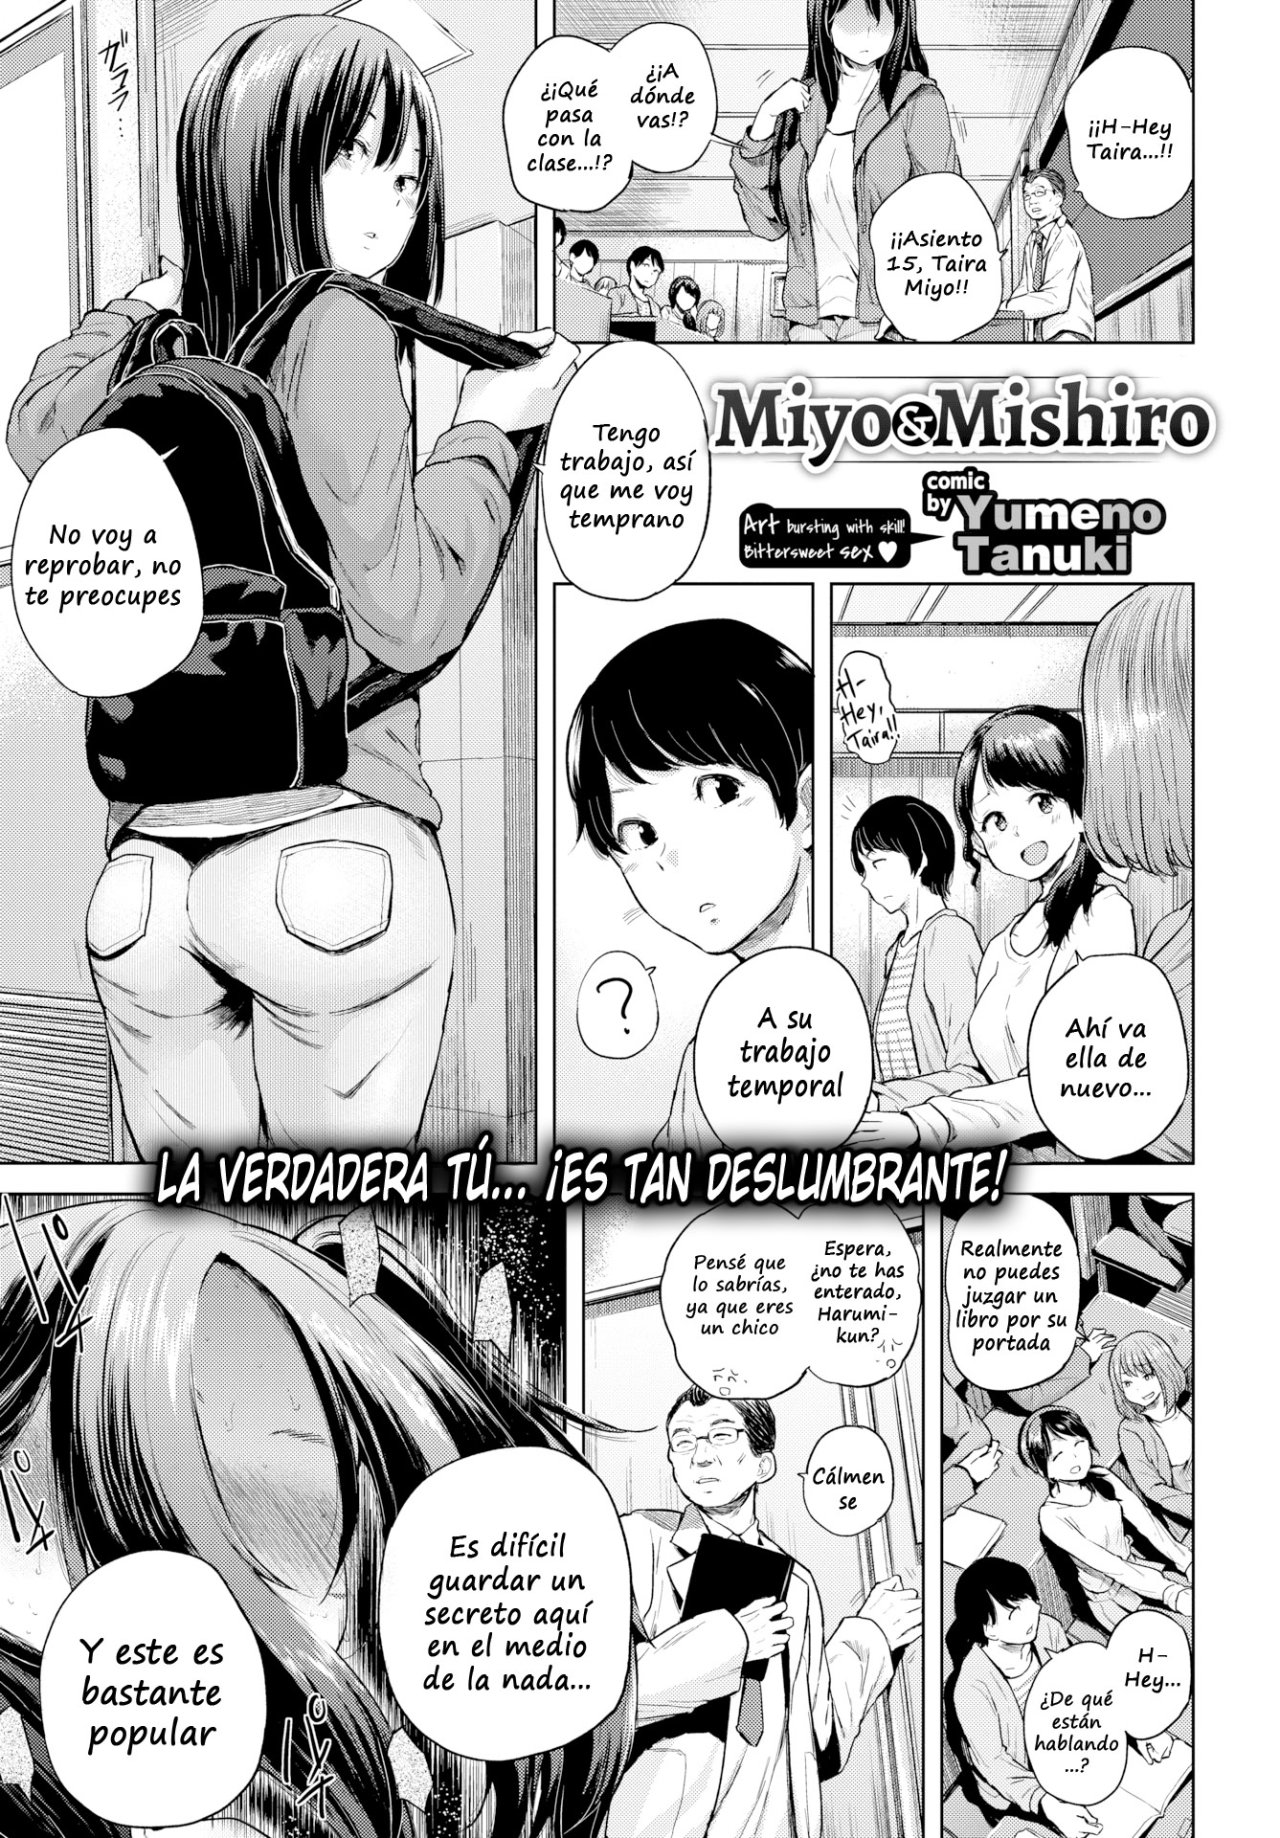 miyo & mishiro - 0